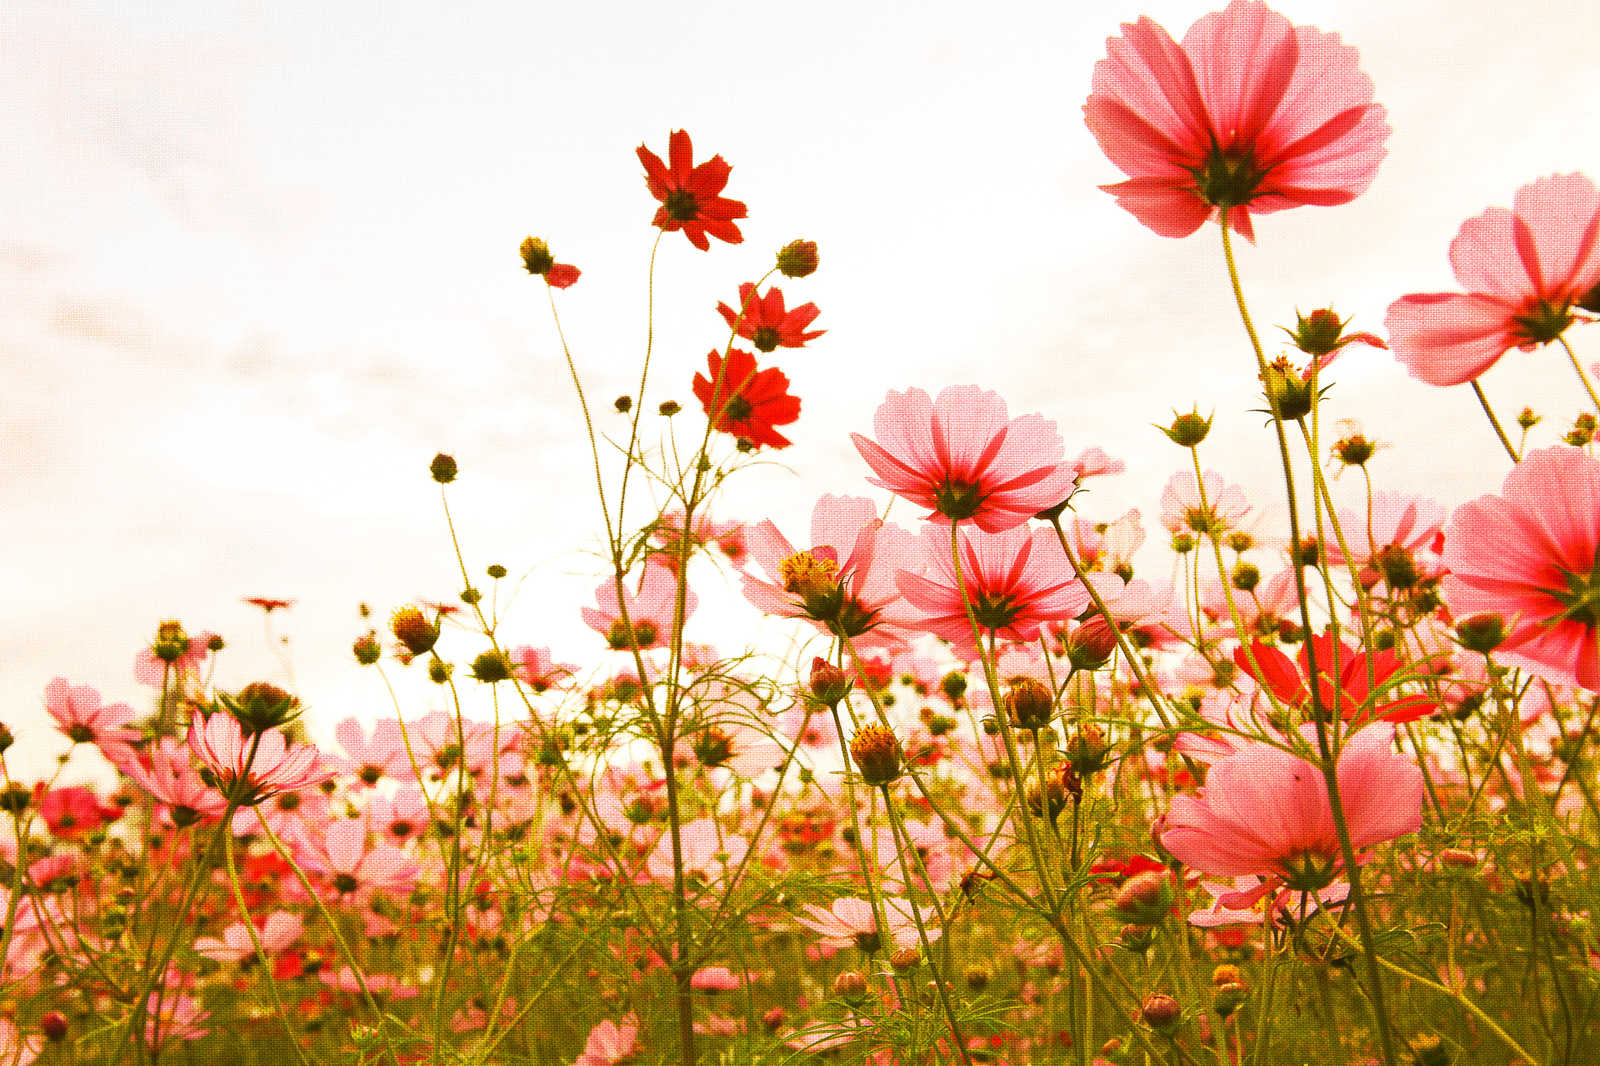             Leinwand mit Blumenwiese im Frühling | rosa, grün, weiß – 0,90 m x 0,60 m
        